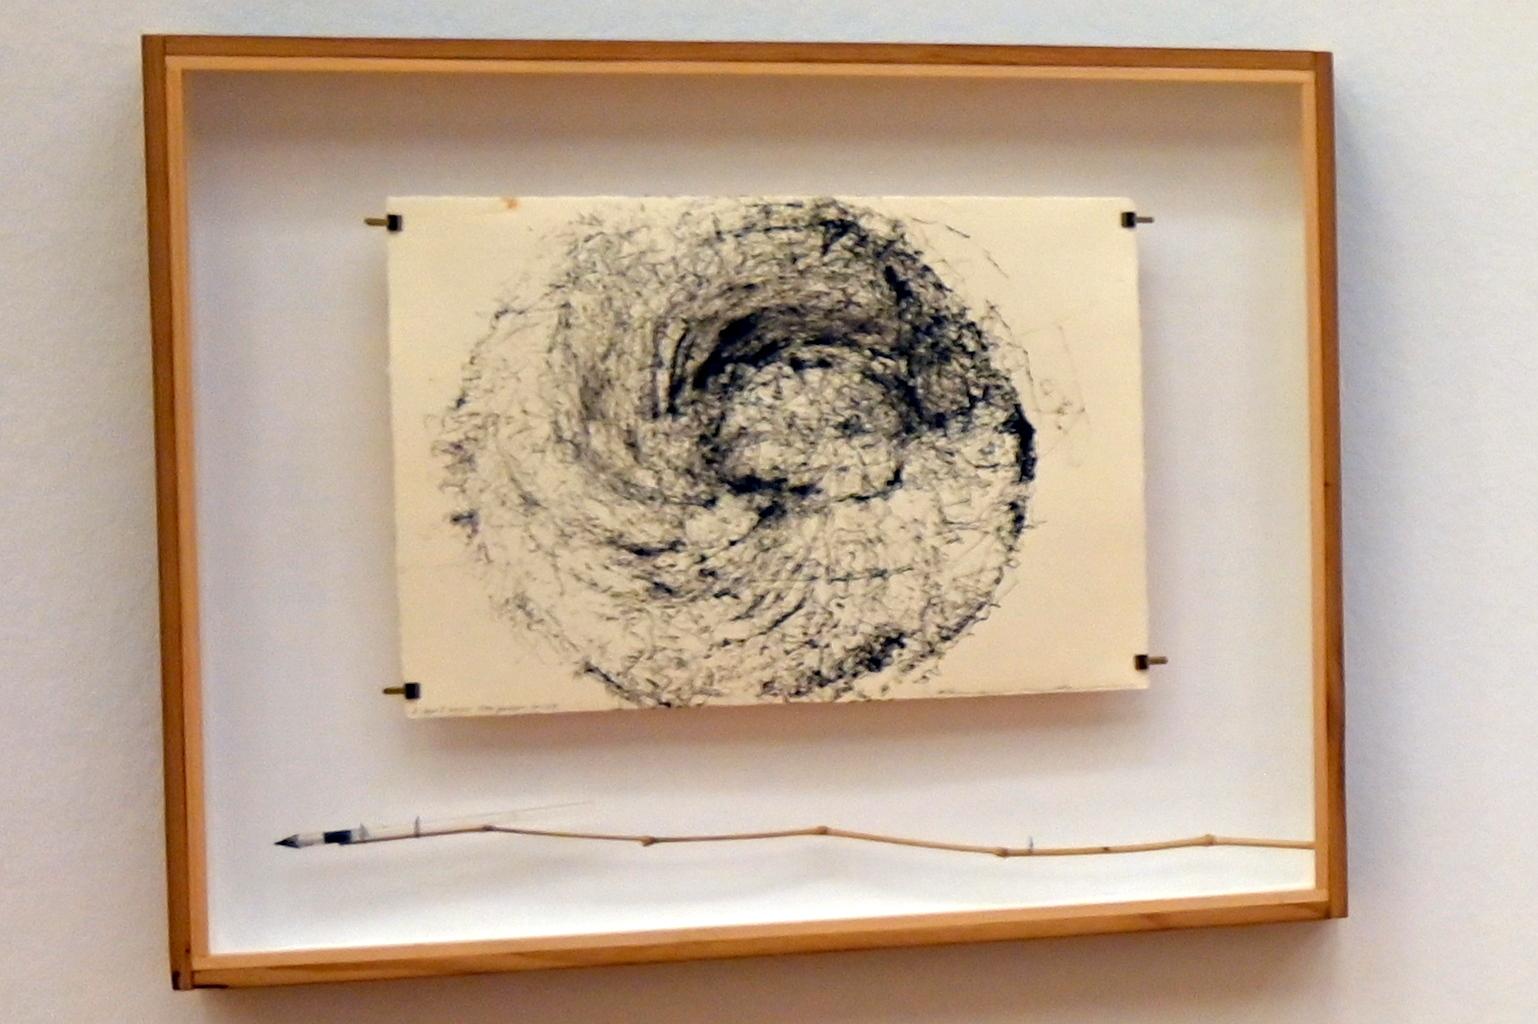 Rikuo Ueda (1997–2022), 05.04.2020 Ota Garden 12:28, Bonn, Kunstmuseum, Ausstellung "Welt in der Schwebe" vom 24.02. - 19.06.2022, Saal 6, 2020